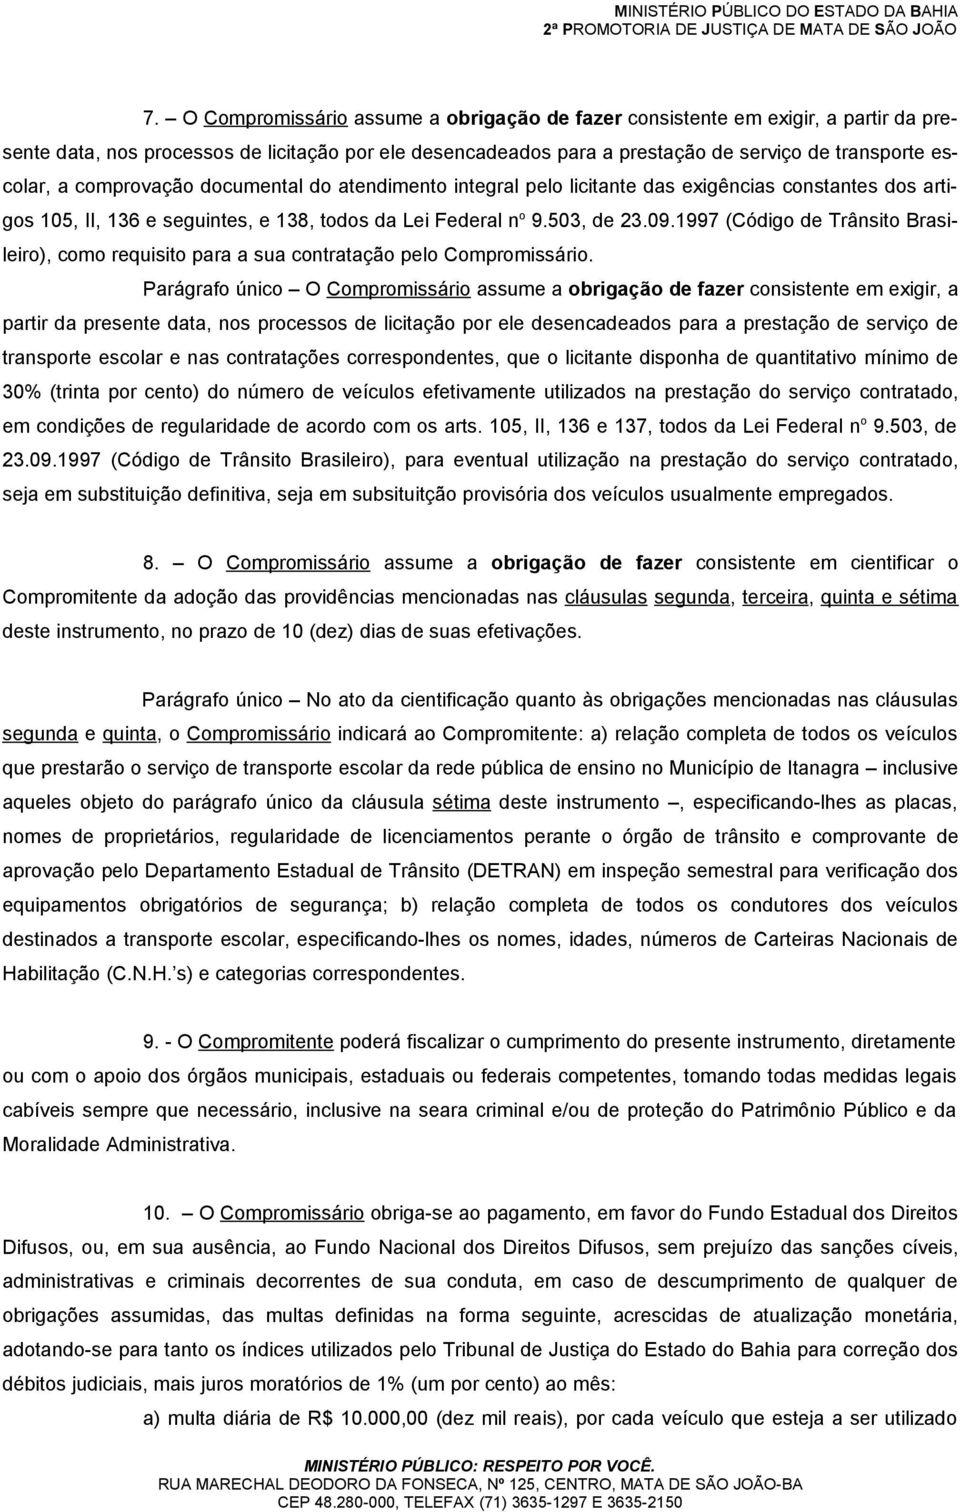 1997 (Código de Trânsito Brasileiro), como requisito para a sua contratação pelo Compromissário.